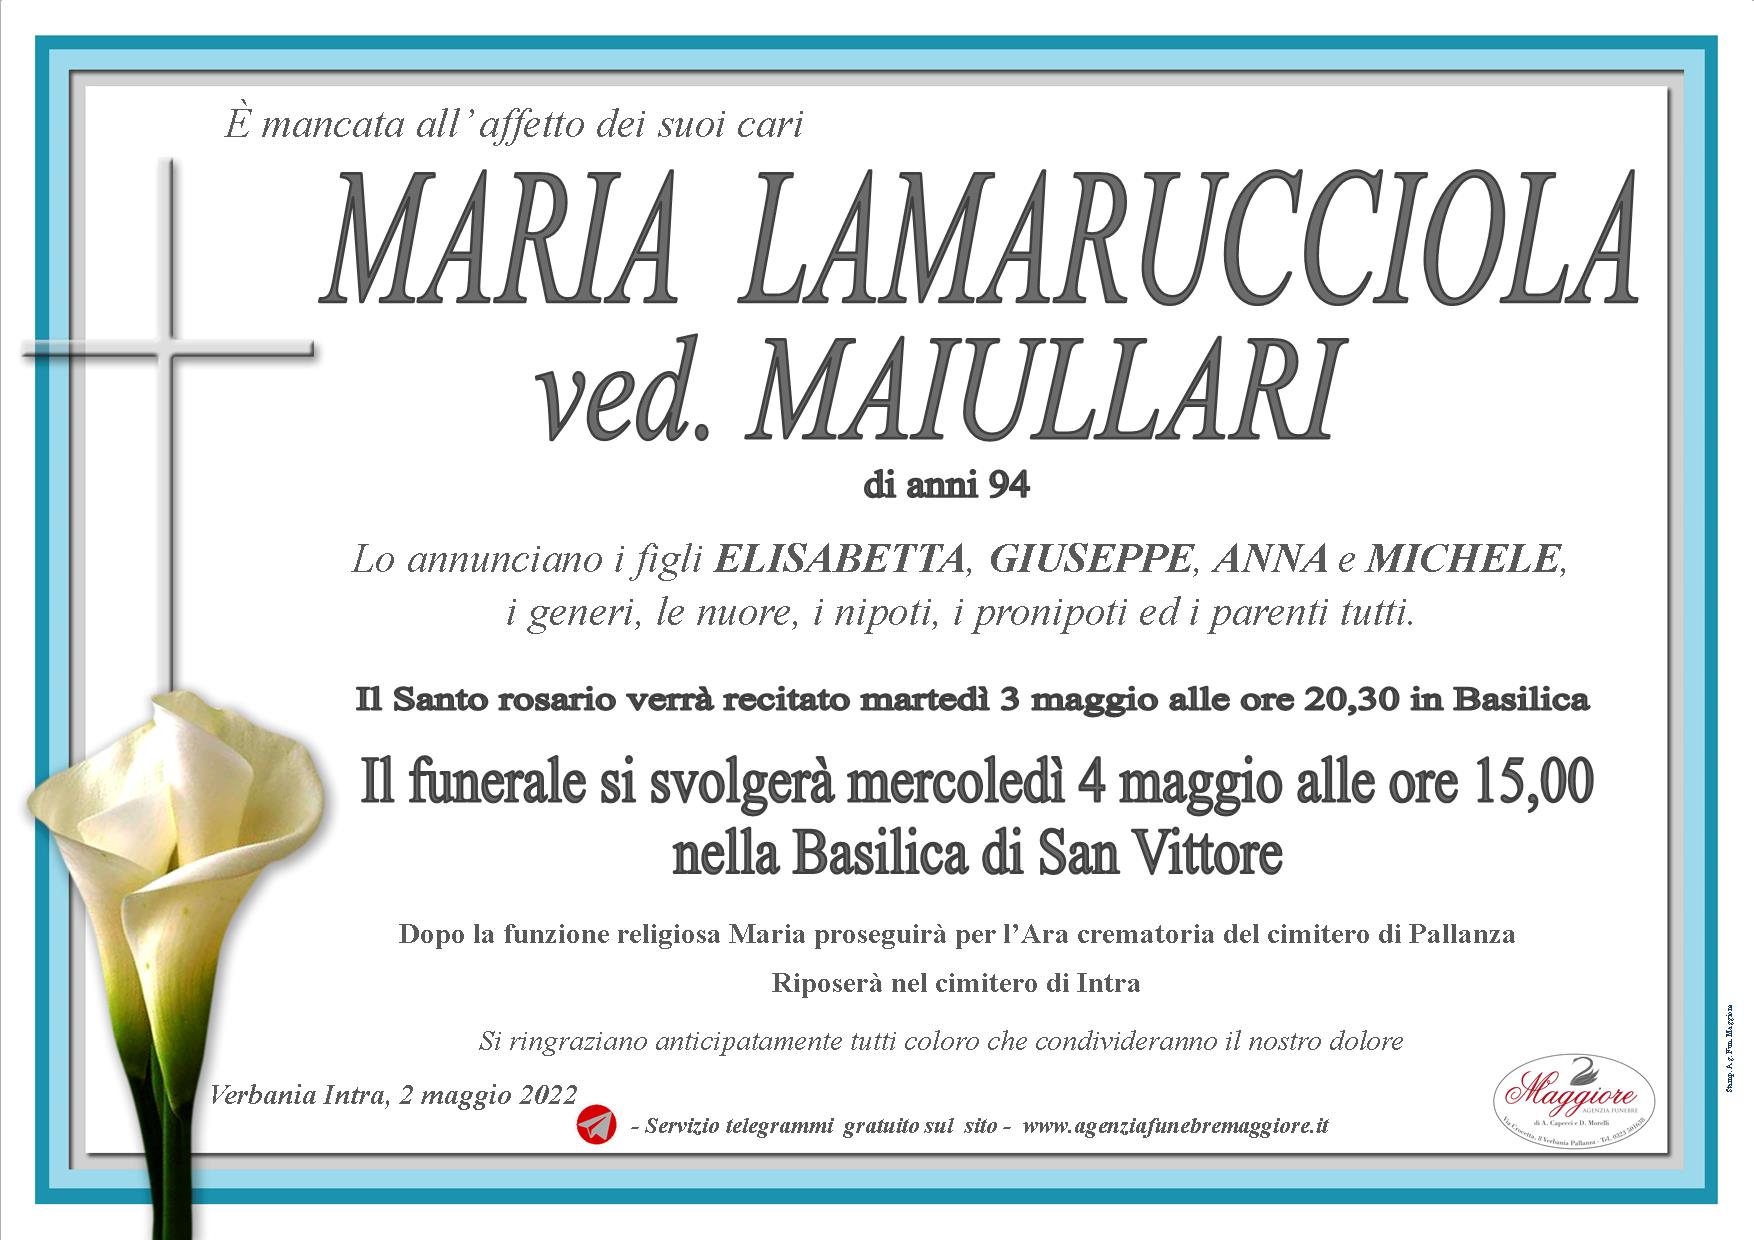 Maria Lamarucciola ved. Maiullari